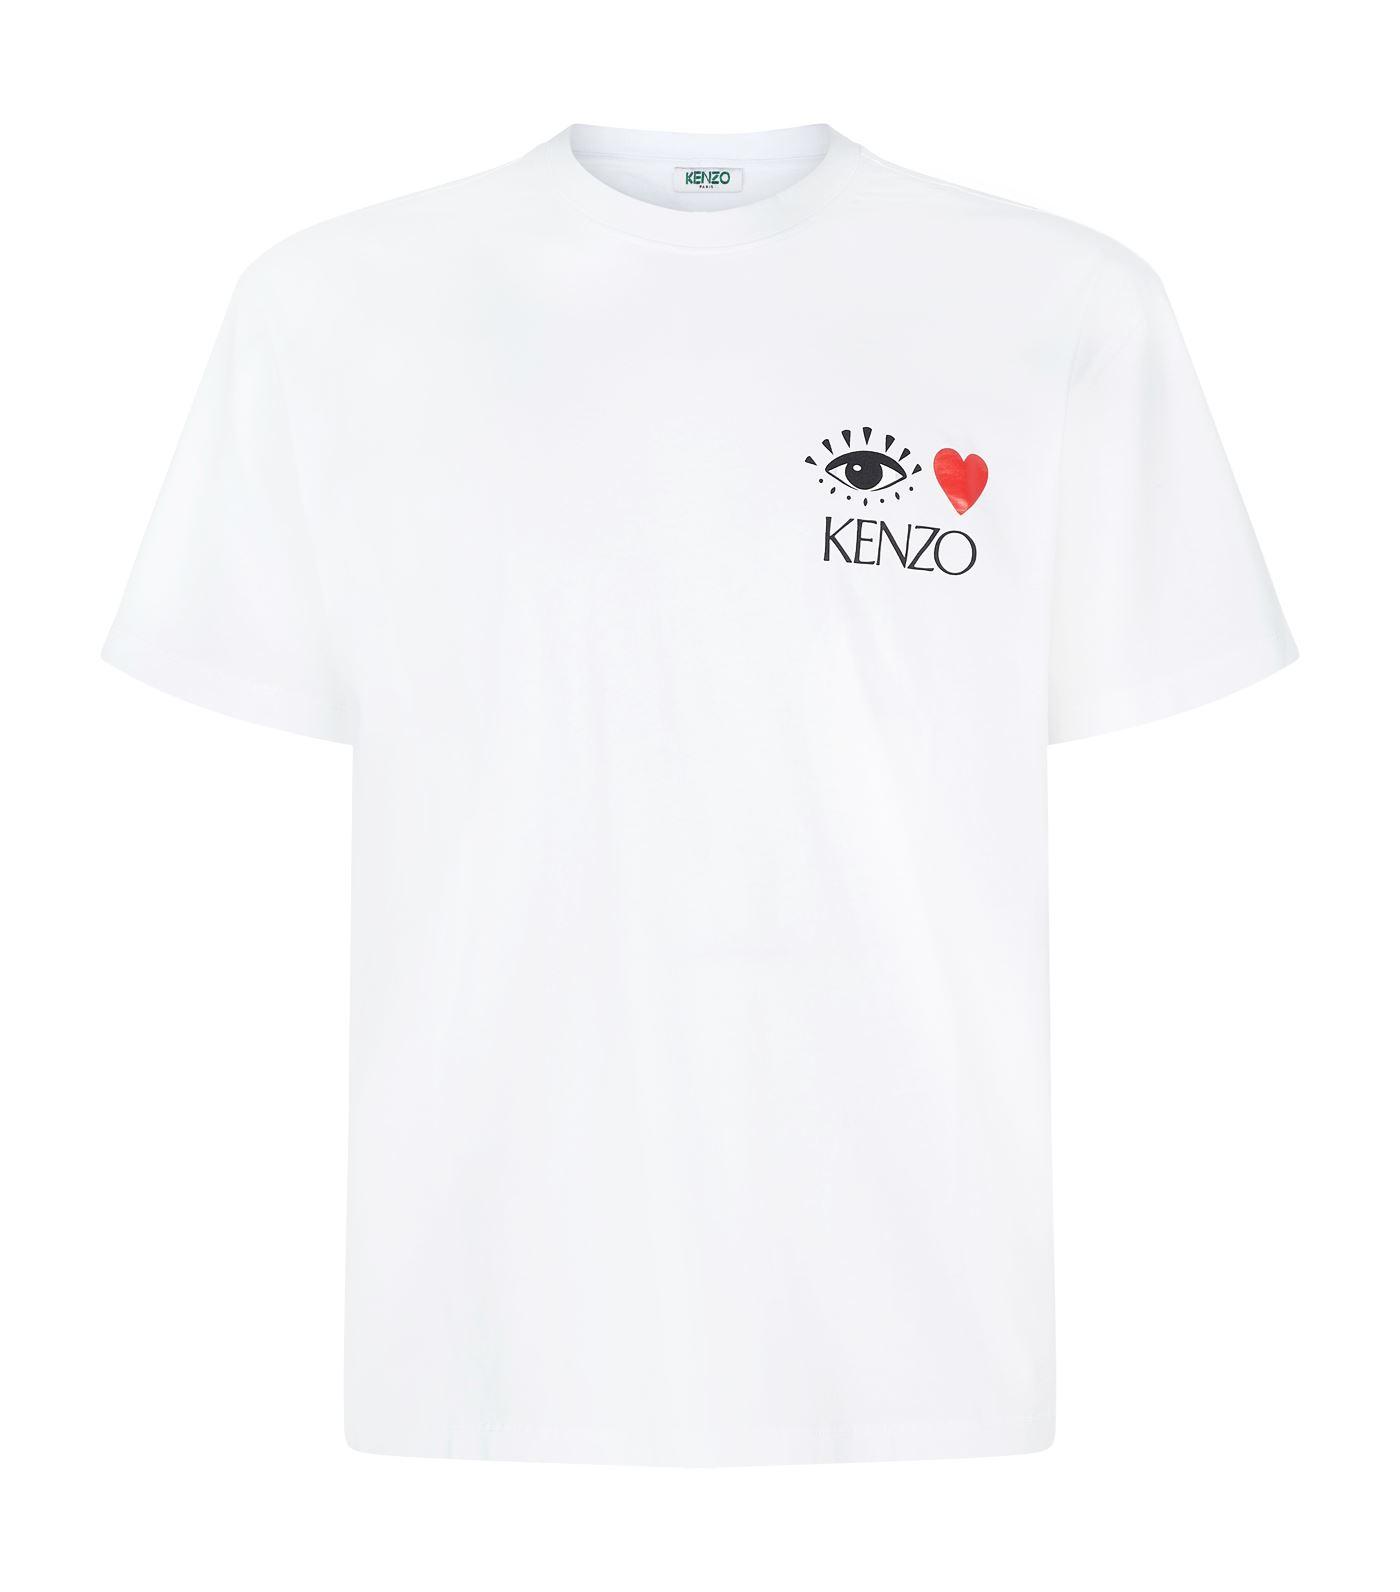 KENZO Eye Love Logo T-shirt in White for Men - Lyst